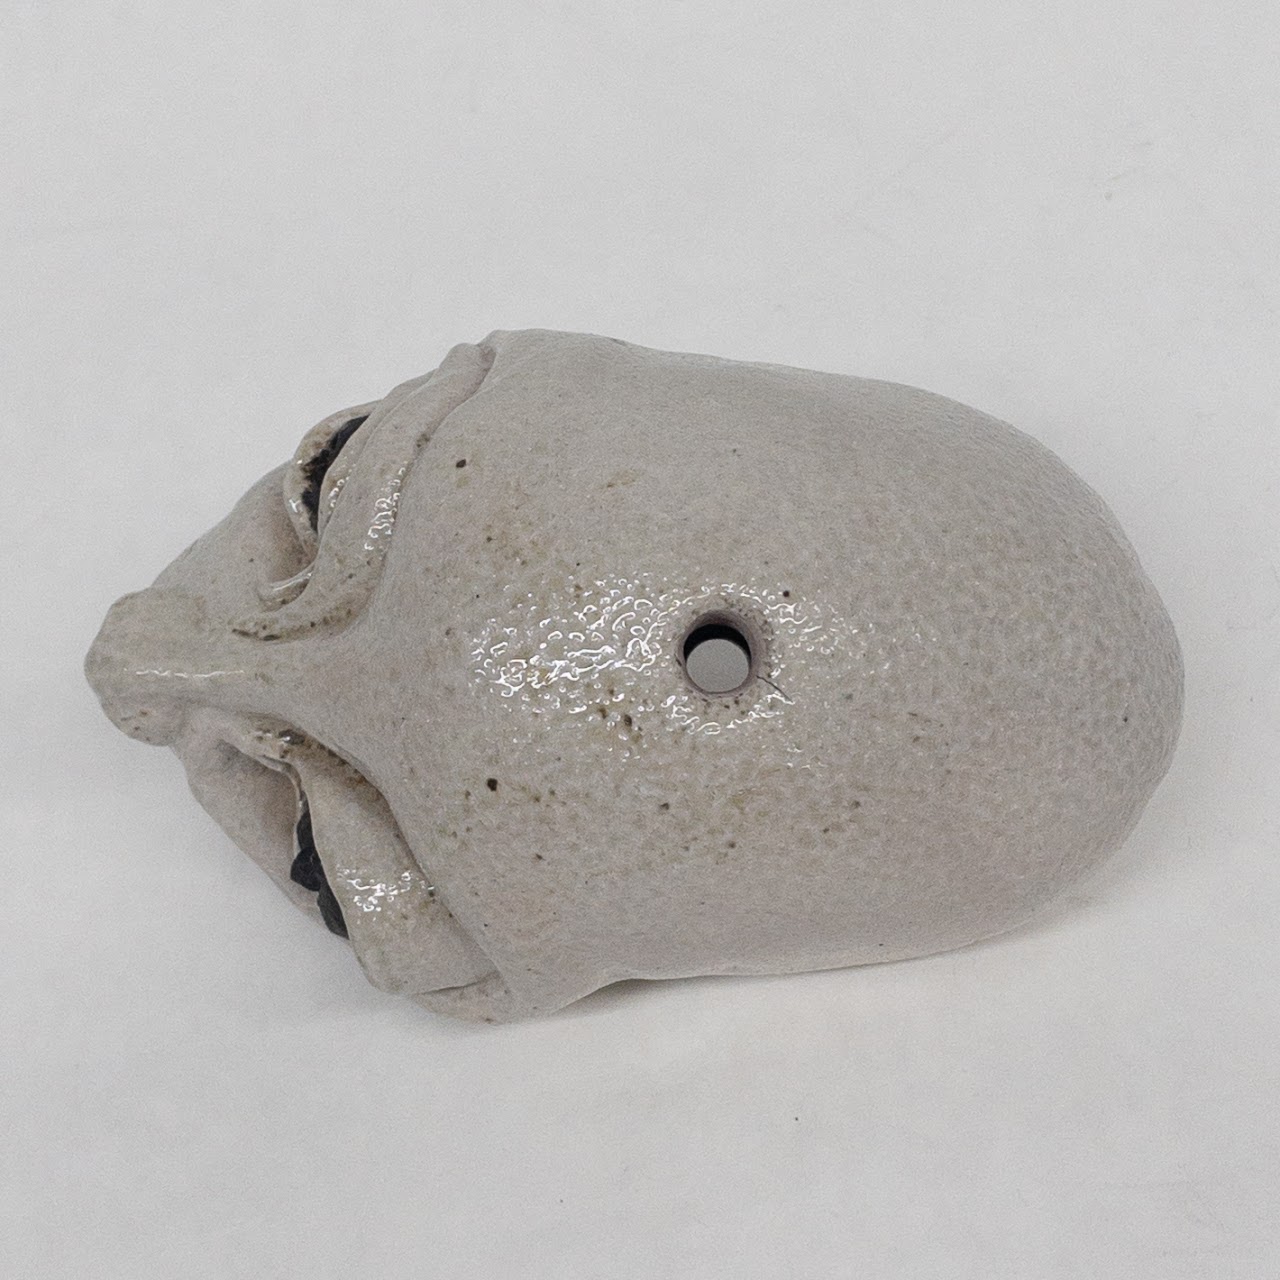 Studio Ceramic Signed Alien Head Sculpture